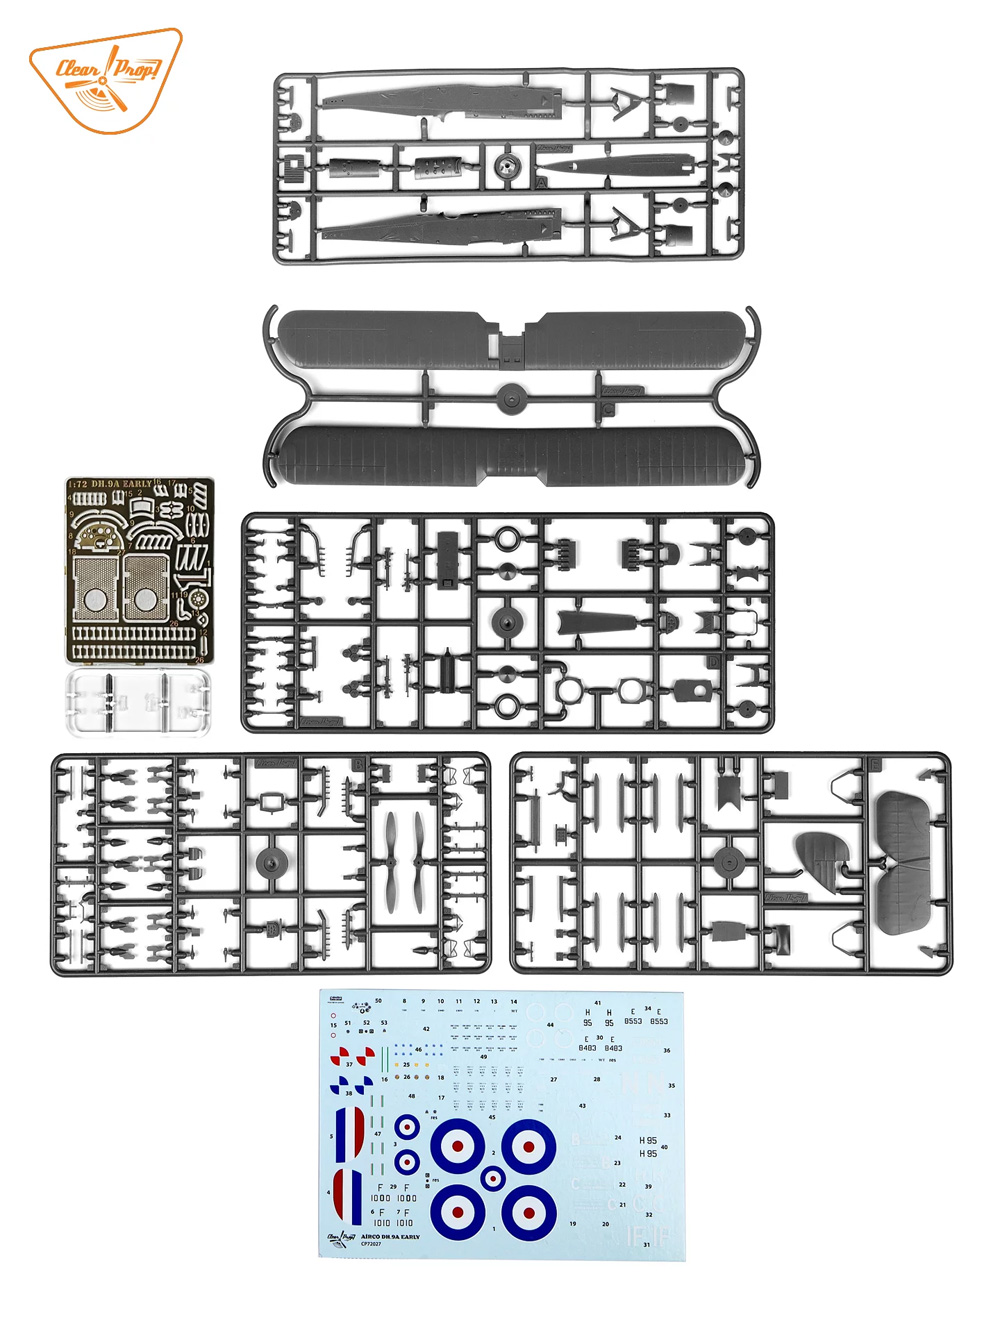 エアコー DH.9A 初期型 プラモデル (クリアープロップ 1/72 スケールモデル No.CP72027) 商品画像_1